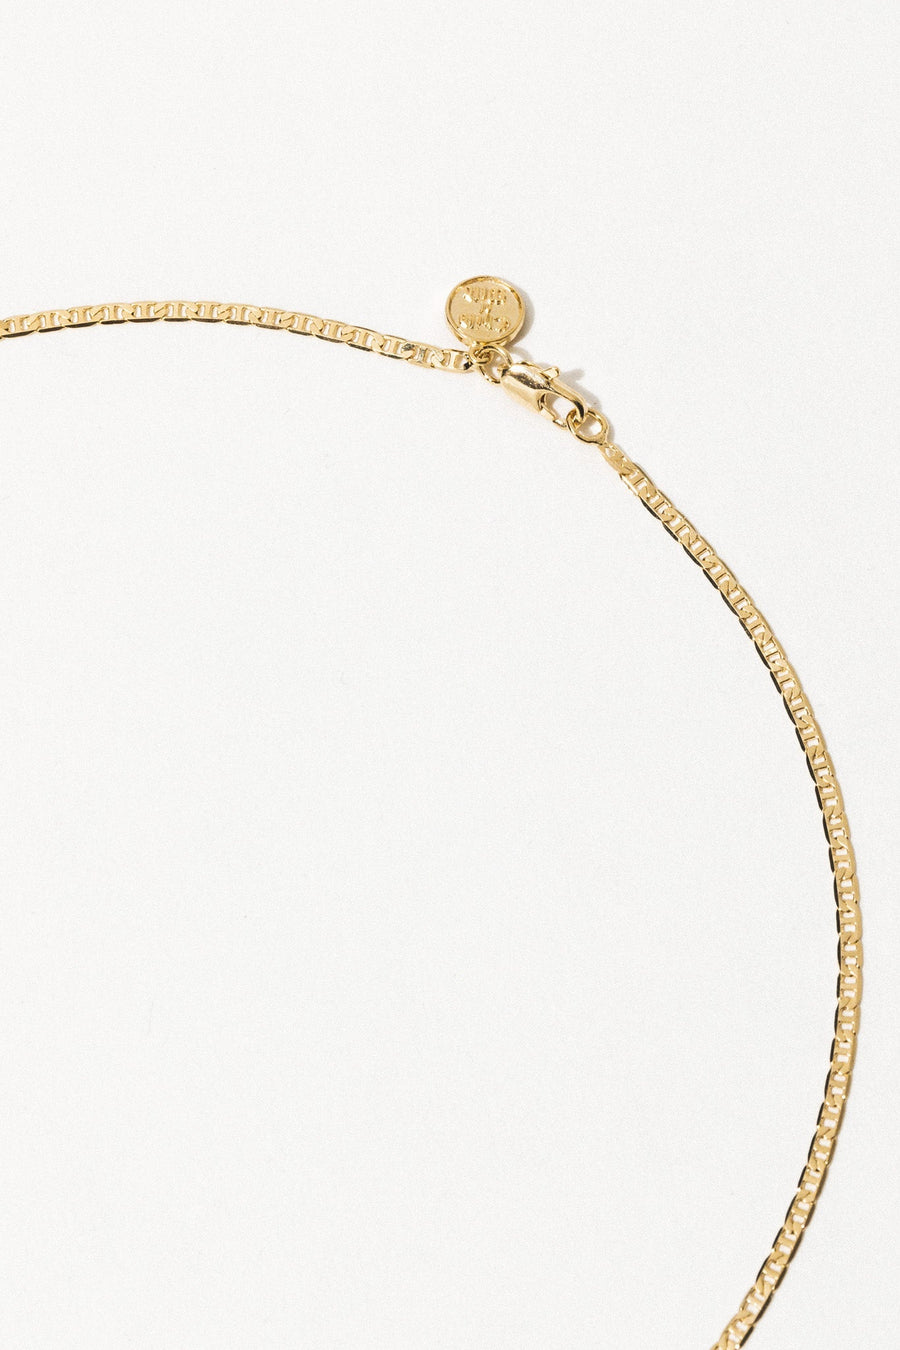 Dona Italia Jewelry Gold / 20 Inches Giovanni Giada Necklace